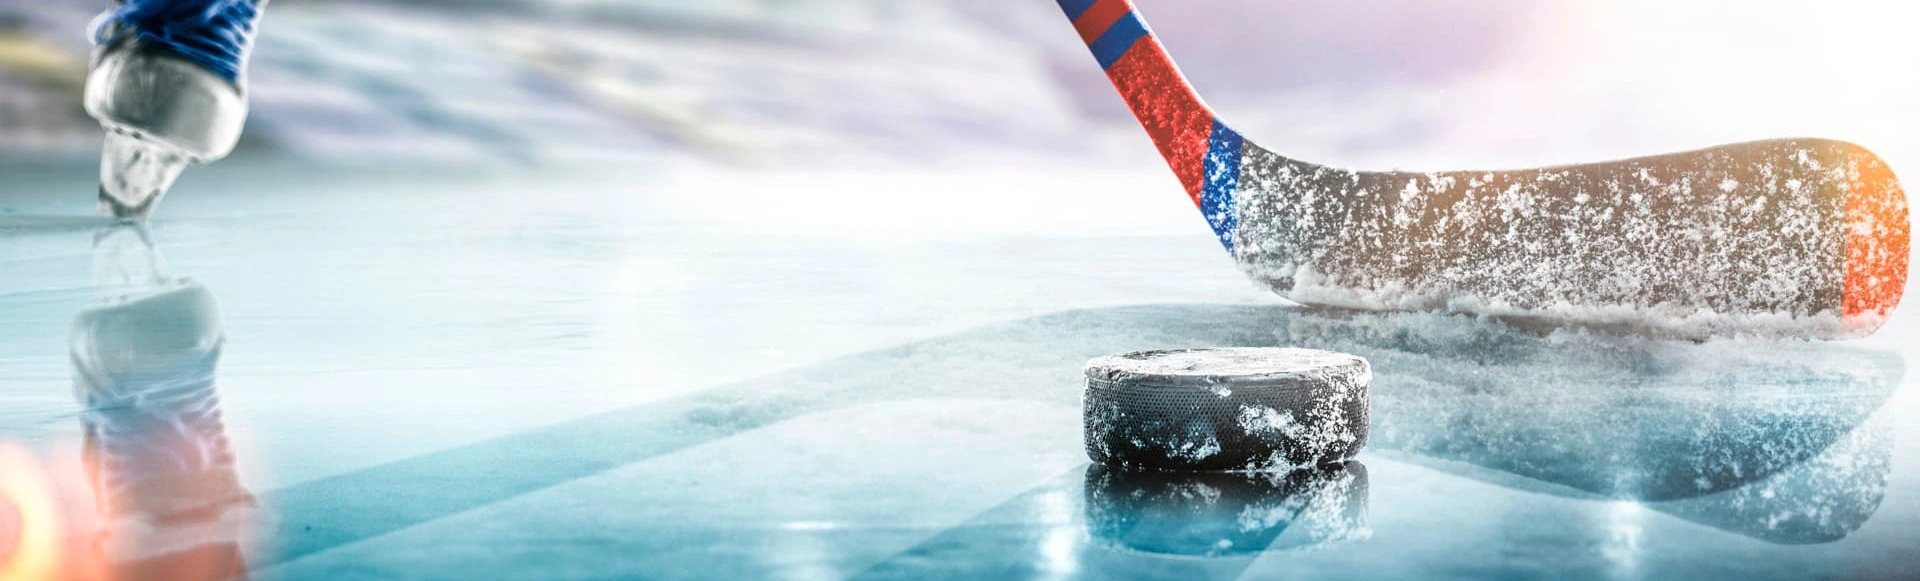 Сезон хоккея продолжается вместе с Лигой Ставок и Большим туром команды «Россия 25»